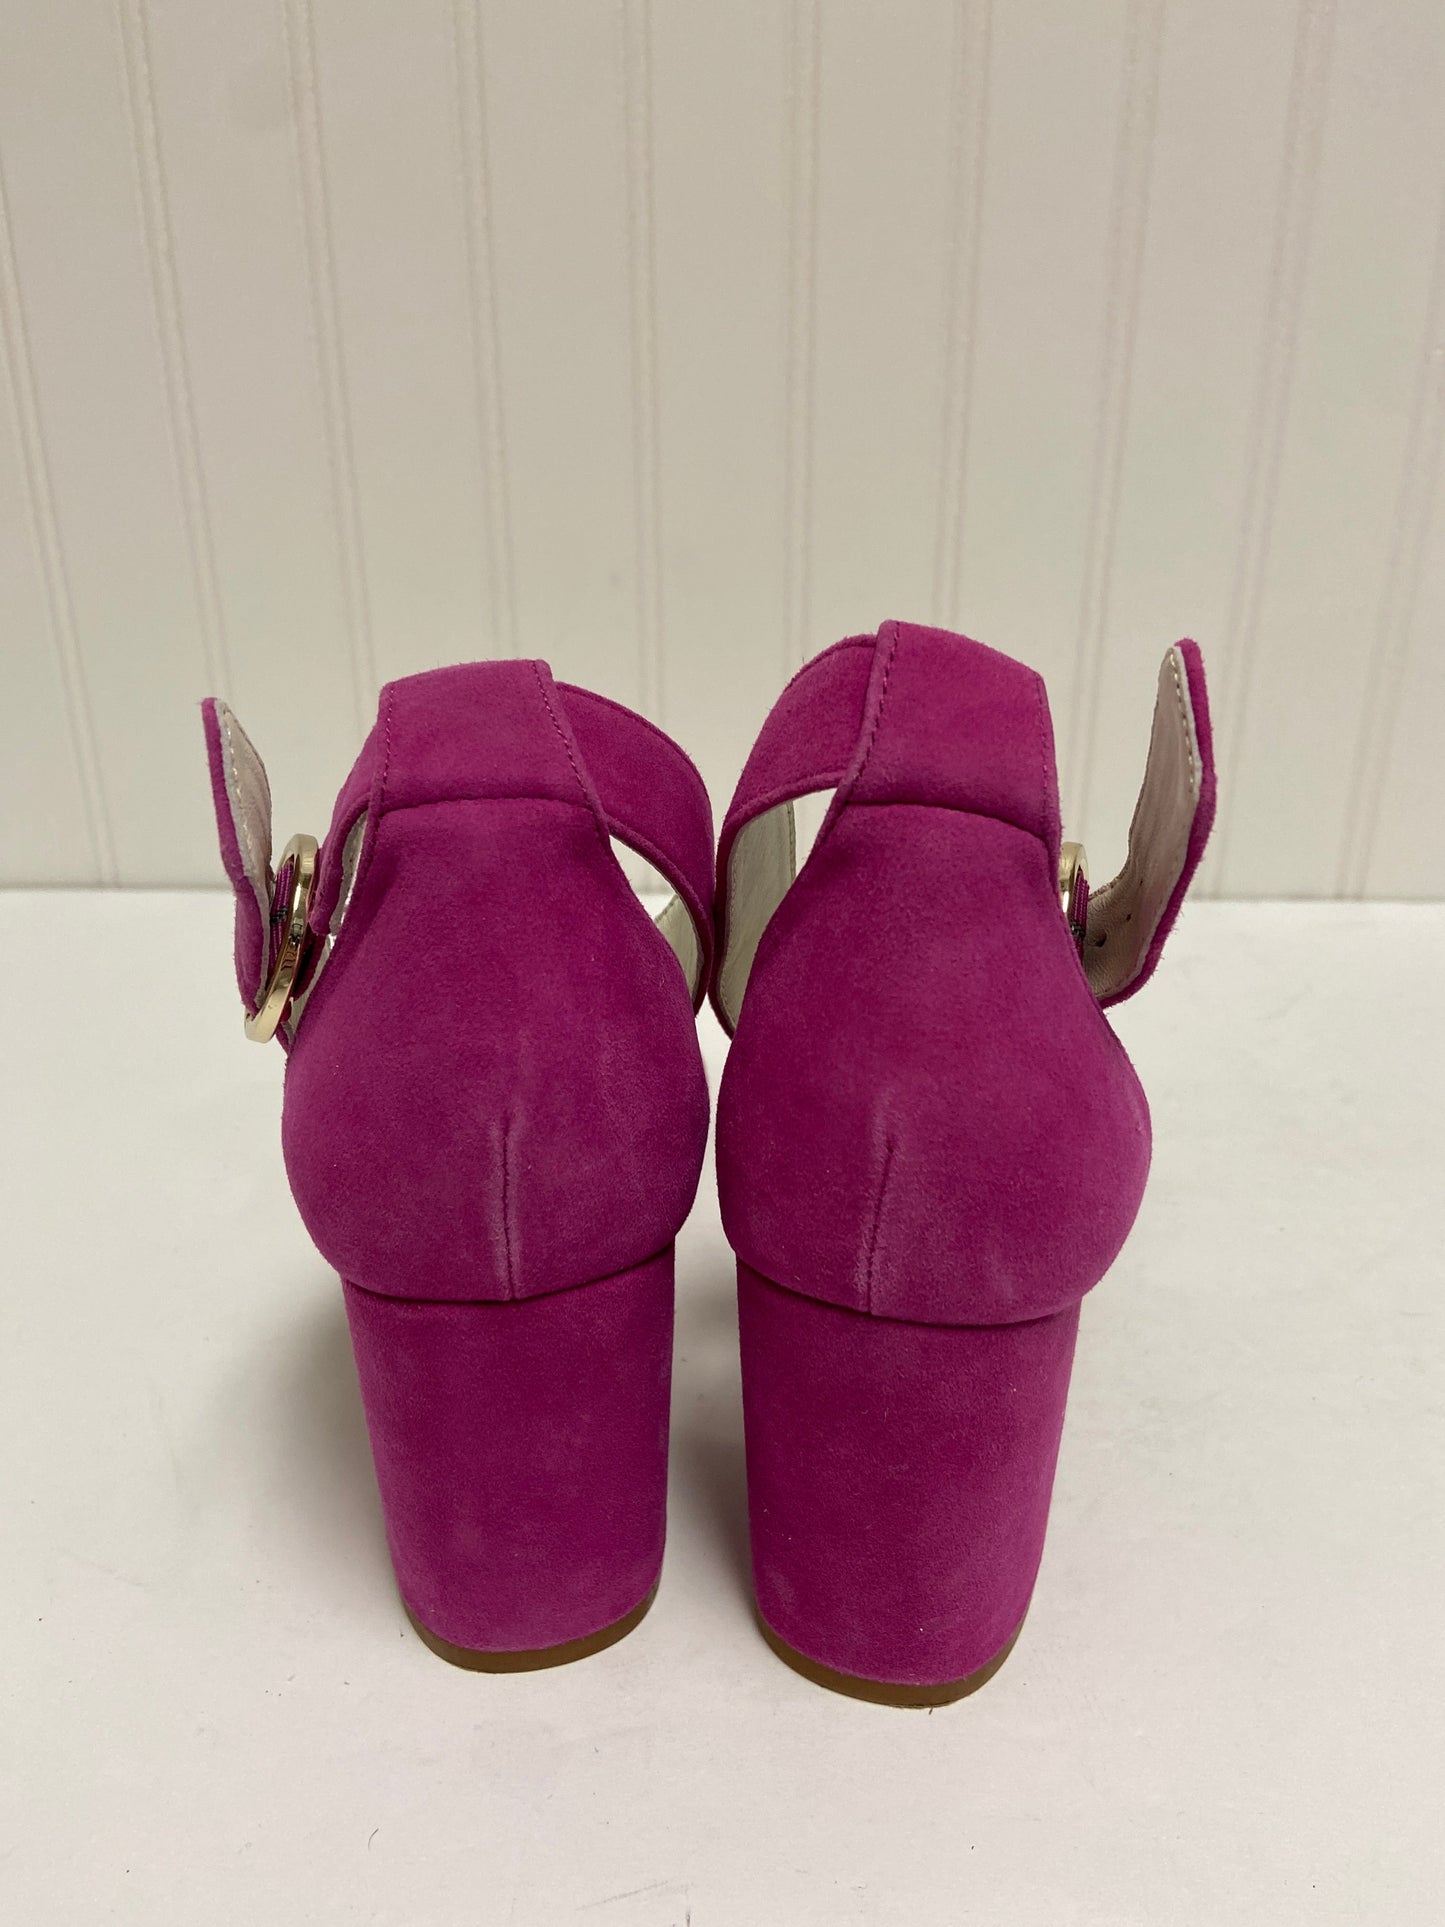 Purple Shoes Heels Block 1901, Size 7.5